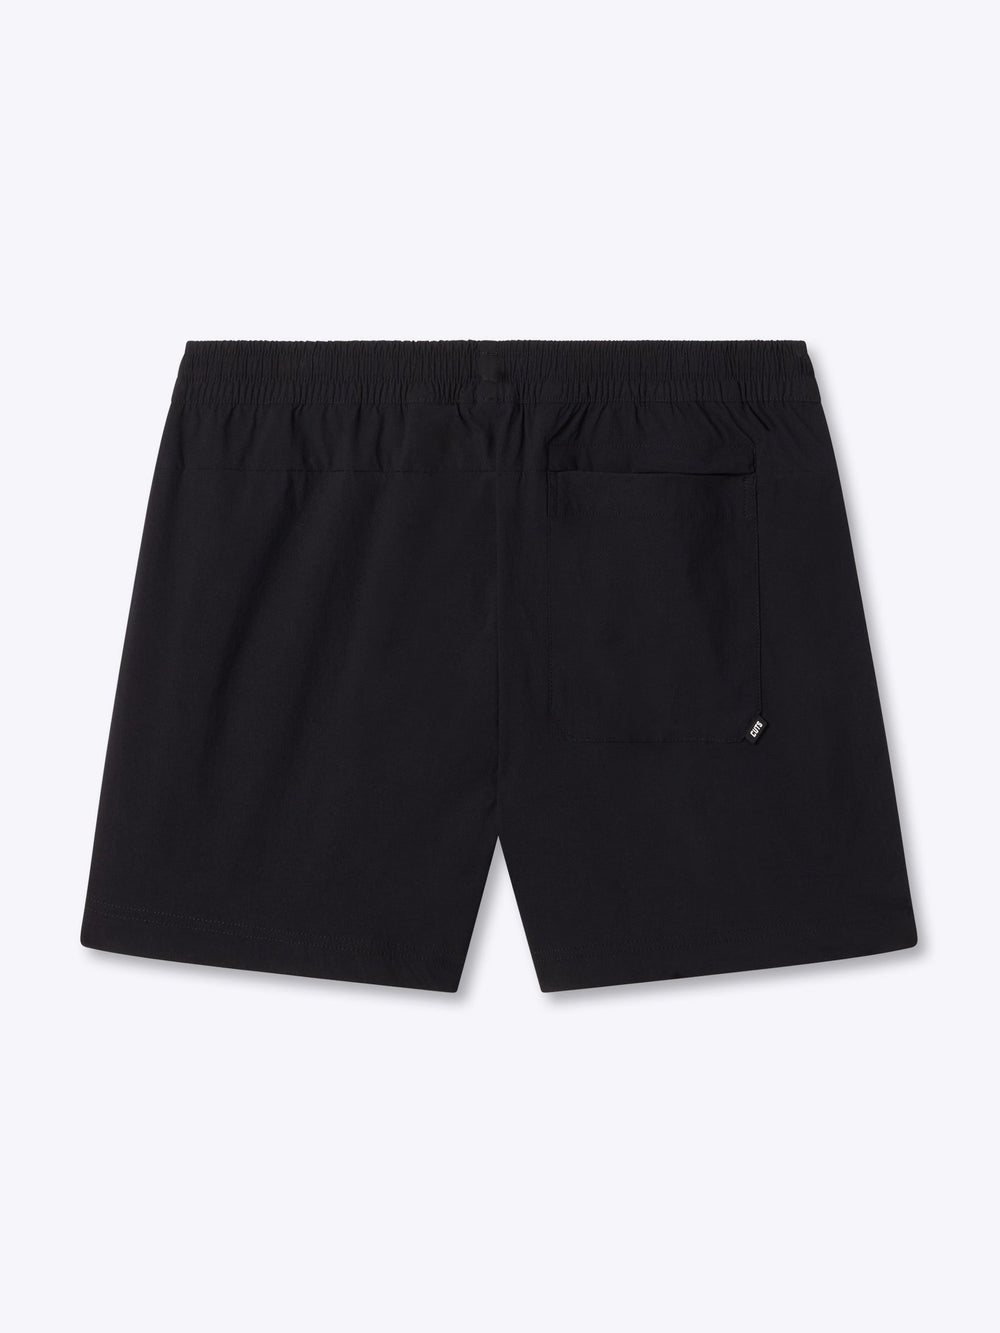 Mojave Short | Black 5" Slim-Fit